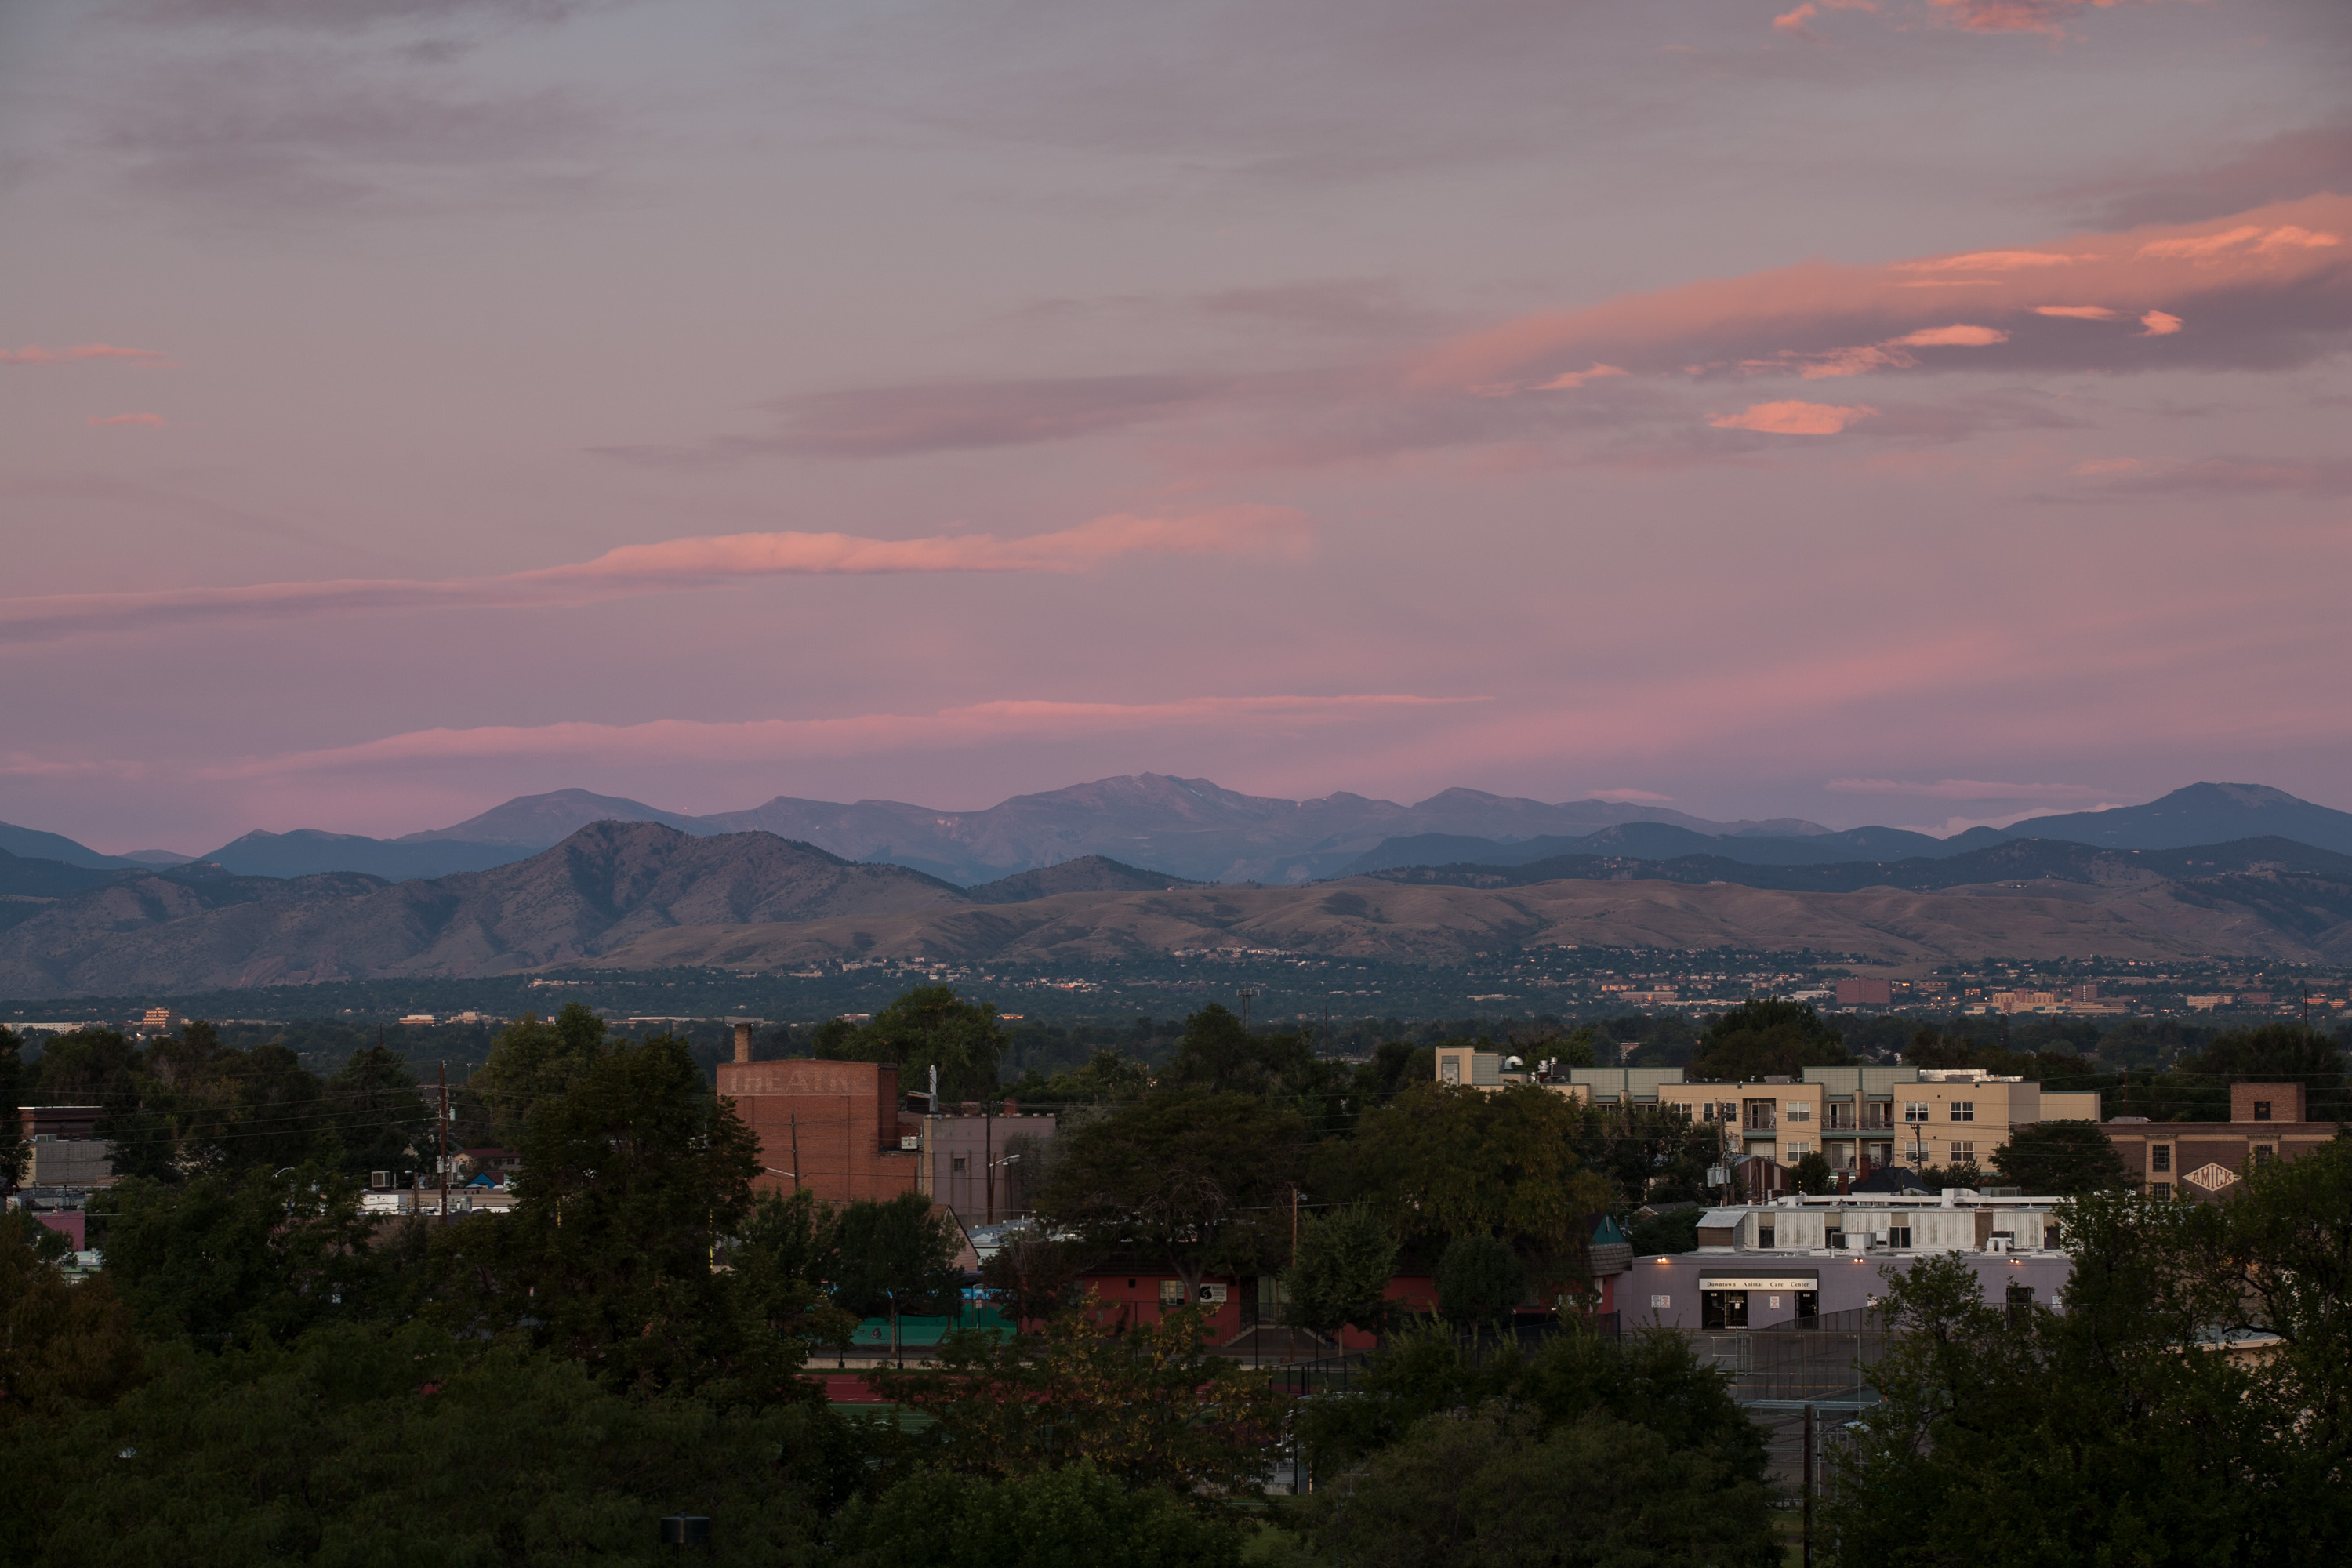 Mount Evans sunrise - September 12, 2011